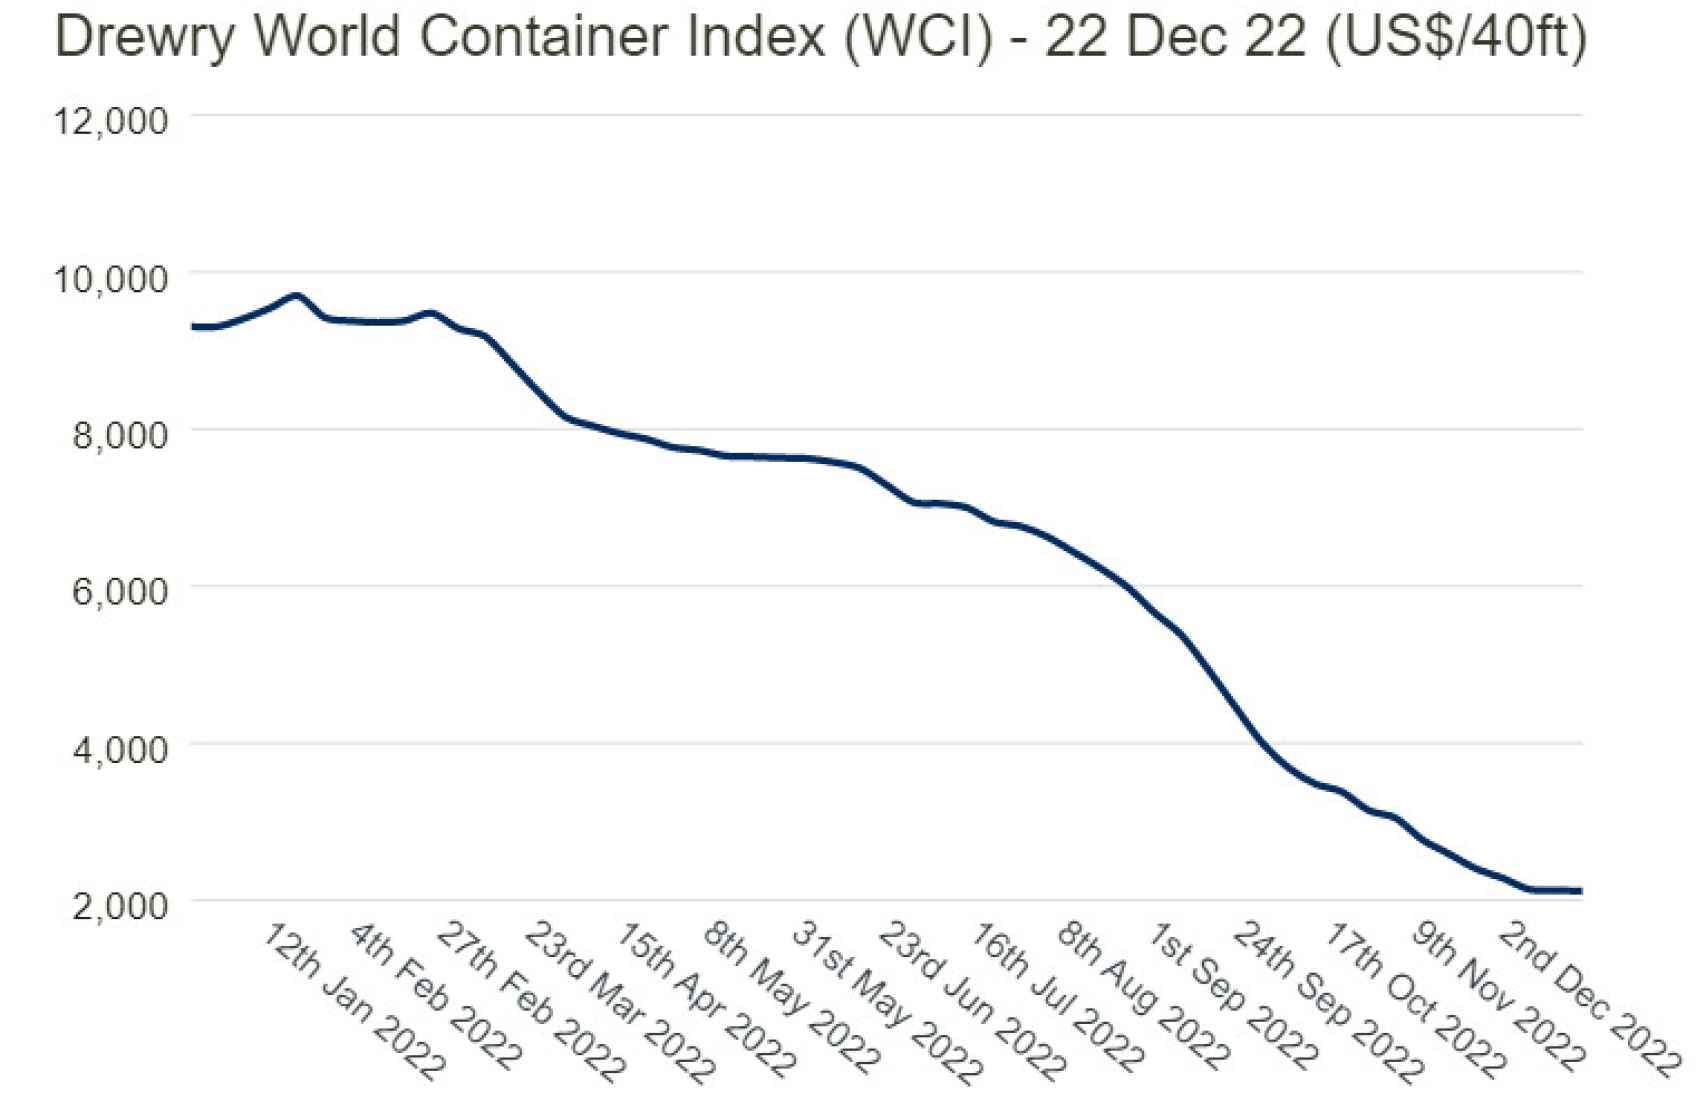 Evolución del Drewry World Container Index.